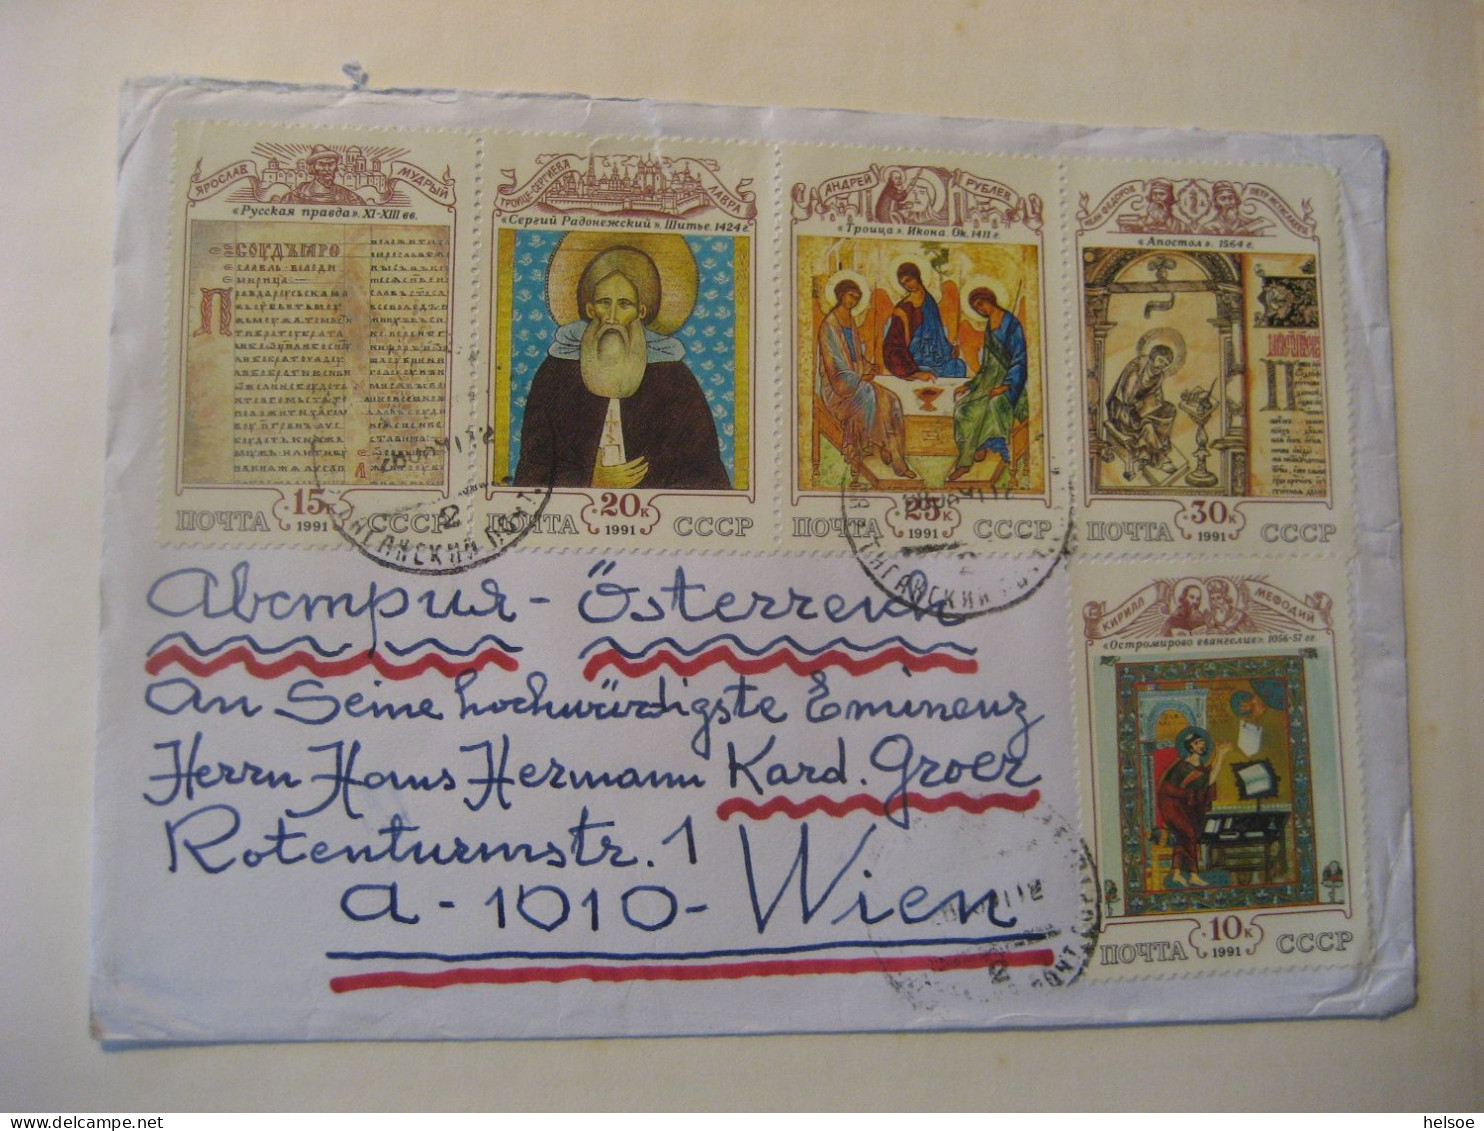 Russland- Sammlung von Frei- und Sondermarken, Blocks Briefe im Album mit 16 Seiten, ** postfrisch und gebraucht